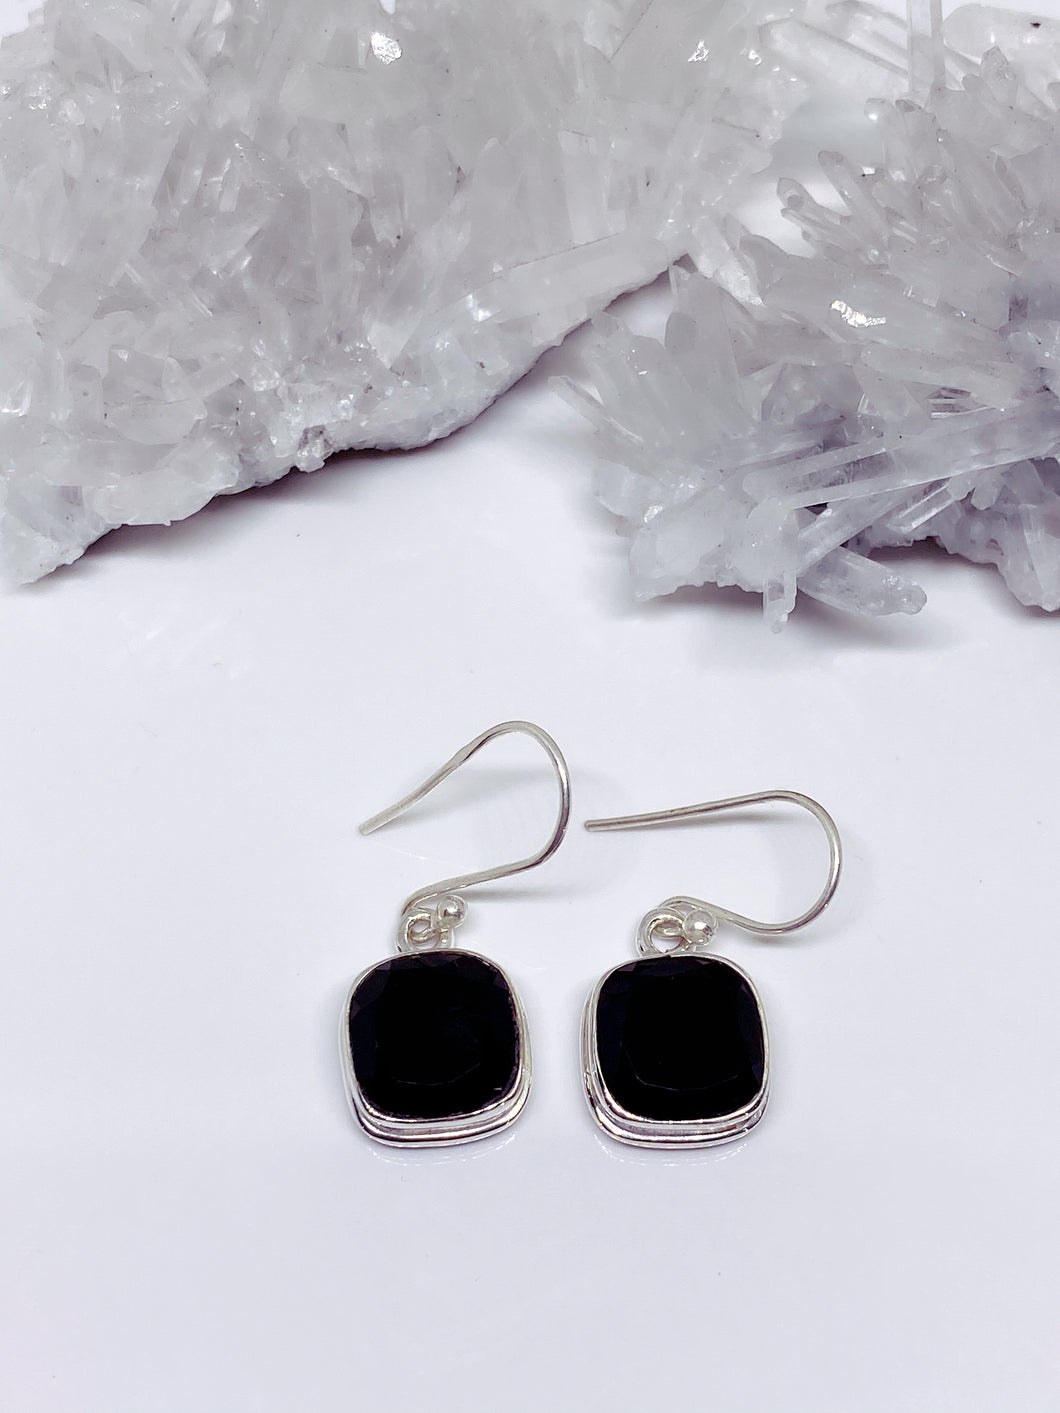 Black Onyx Earrings - Sterling Silver